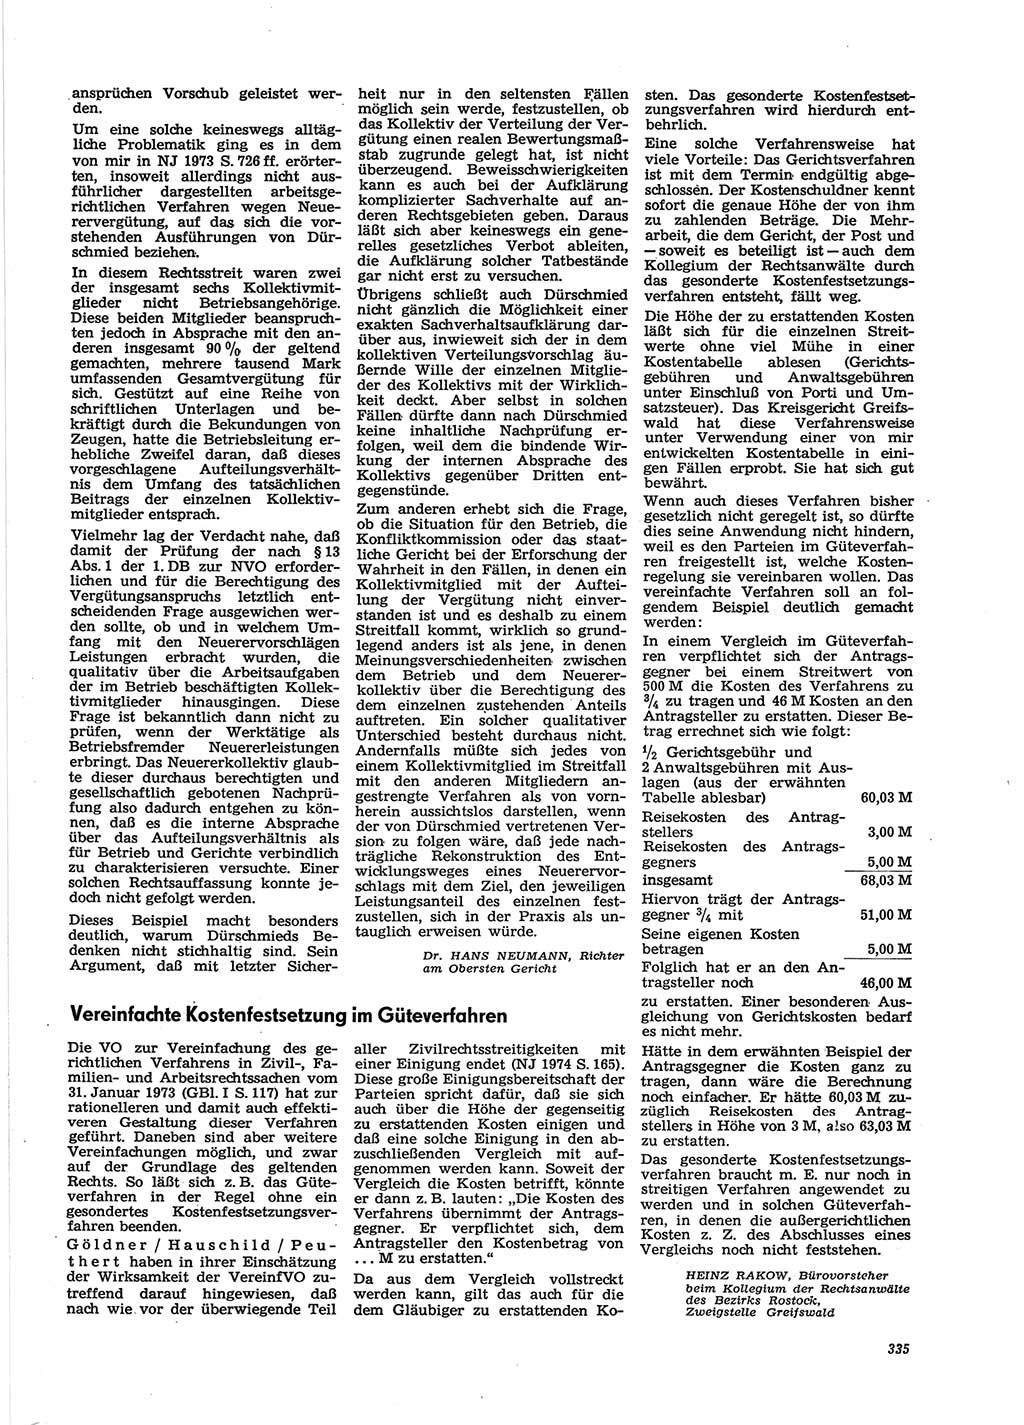 Neue Justiz (NJ), Zeitschrift für Recht und Rechtswissenschaft [Deutsche Demokratische Republik (DDR)], 28. Jahrgang 1974, Seite 335 (NJ DDR 1974, S. 335)